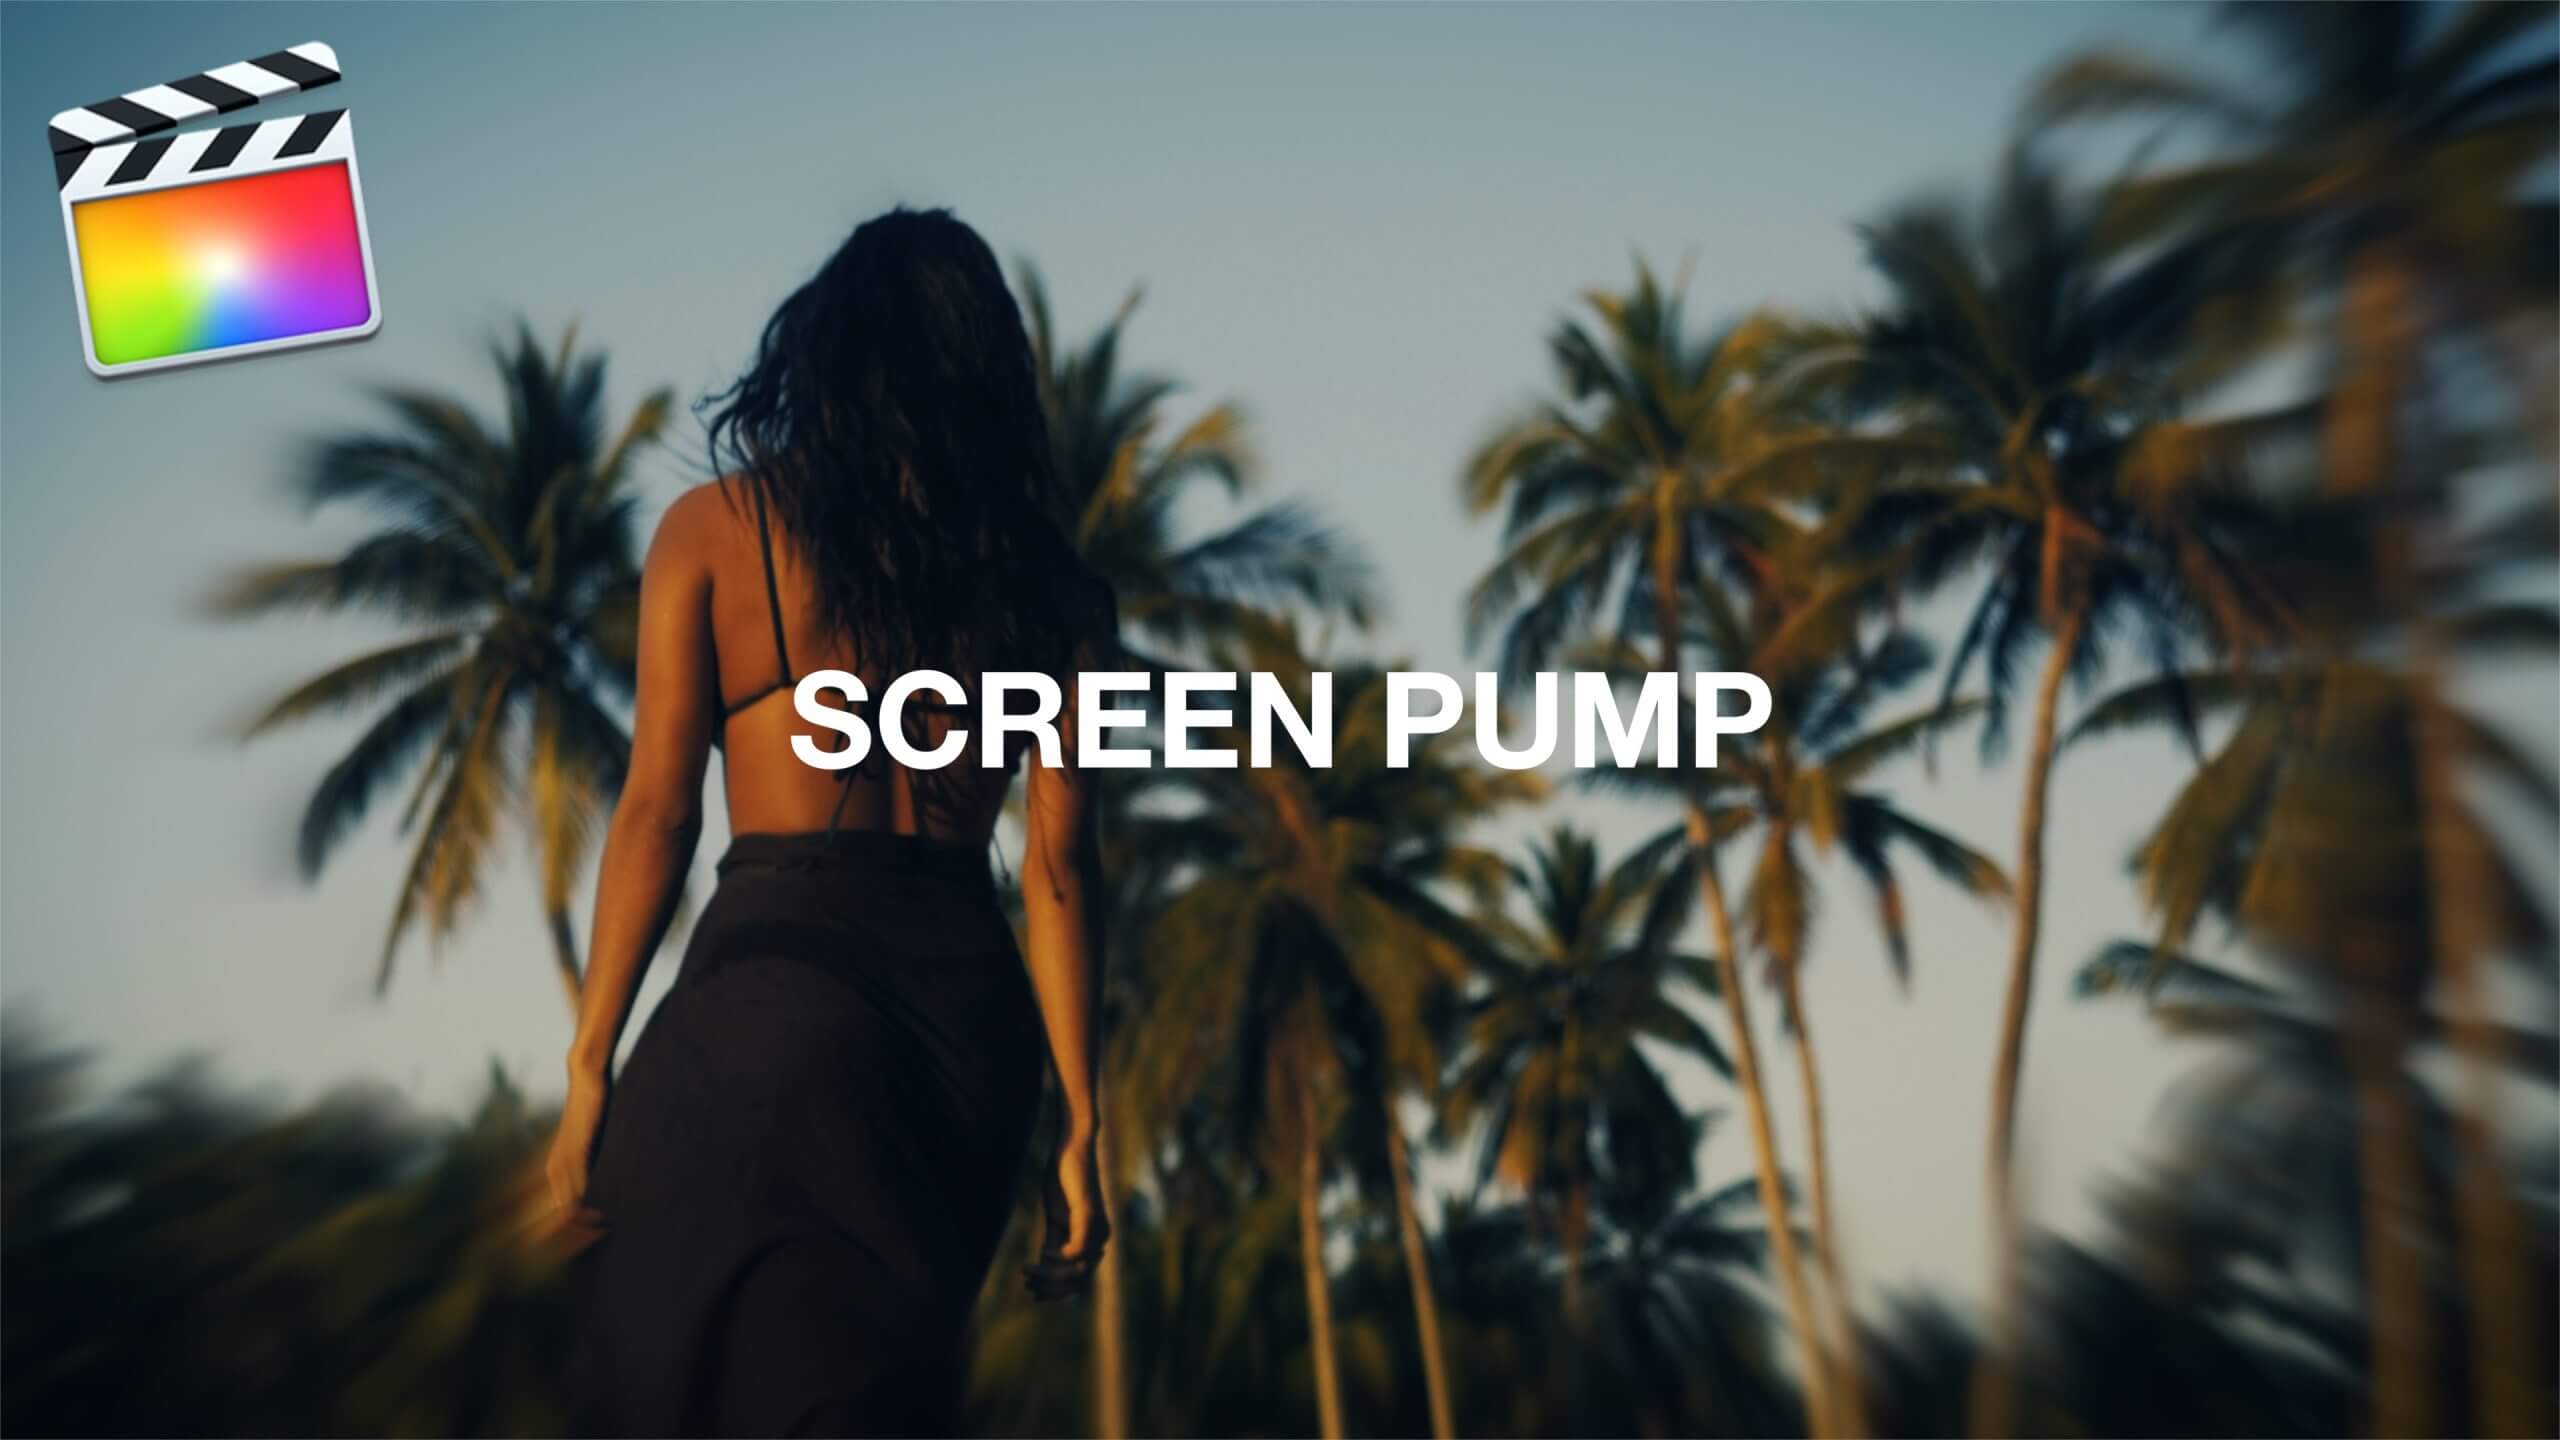 Final Cut Pro X スクリーンポンプエフェクト「Screen Pump Effect」の方法